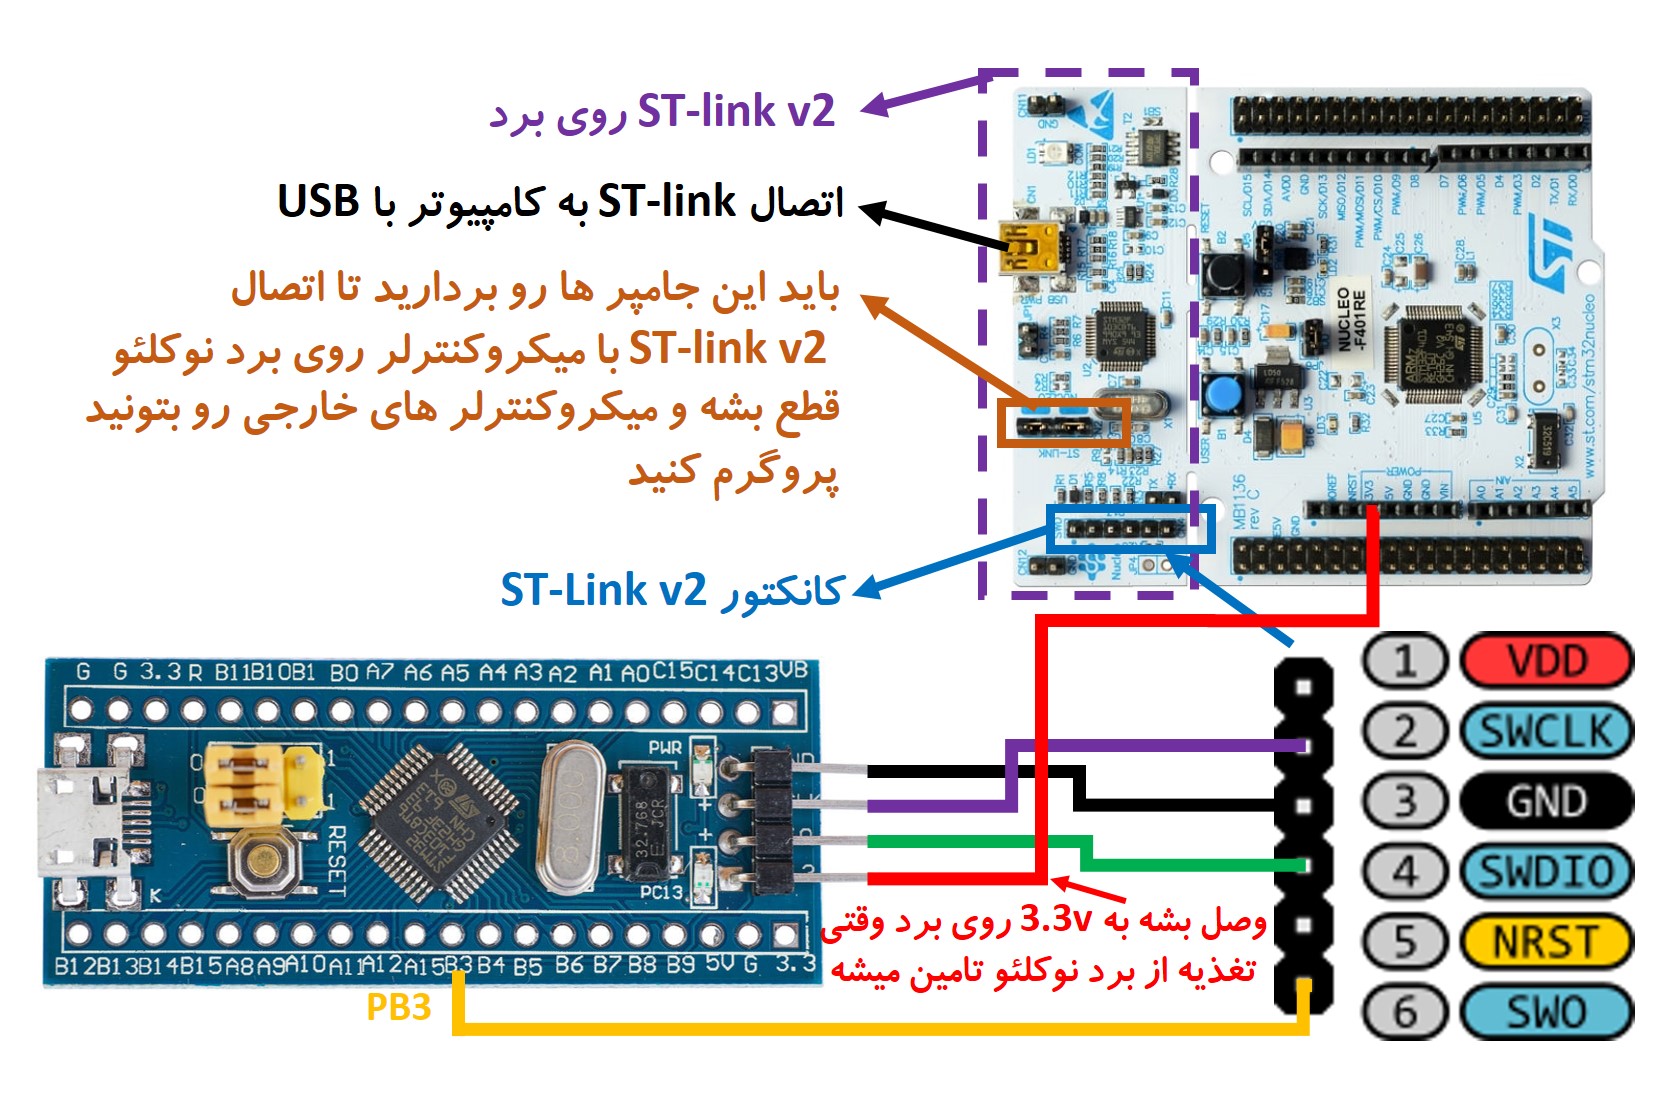 اتصال پروگرمر ST-link روی برد نوکلئو به برد بلوپیل دارای میکروکنترلر STM32F103C8